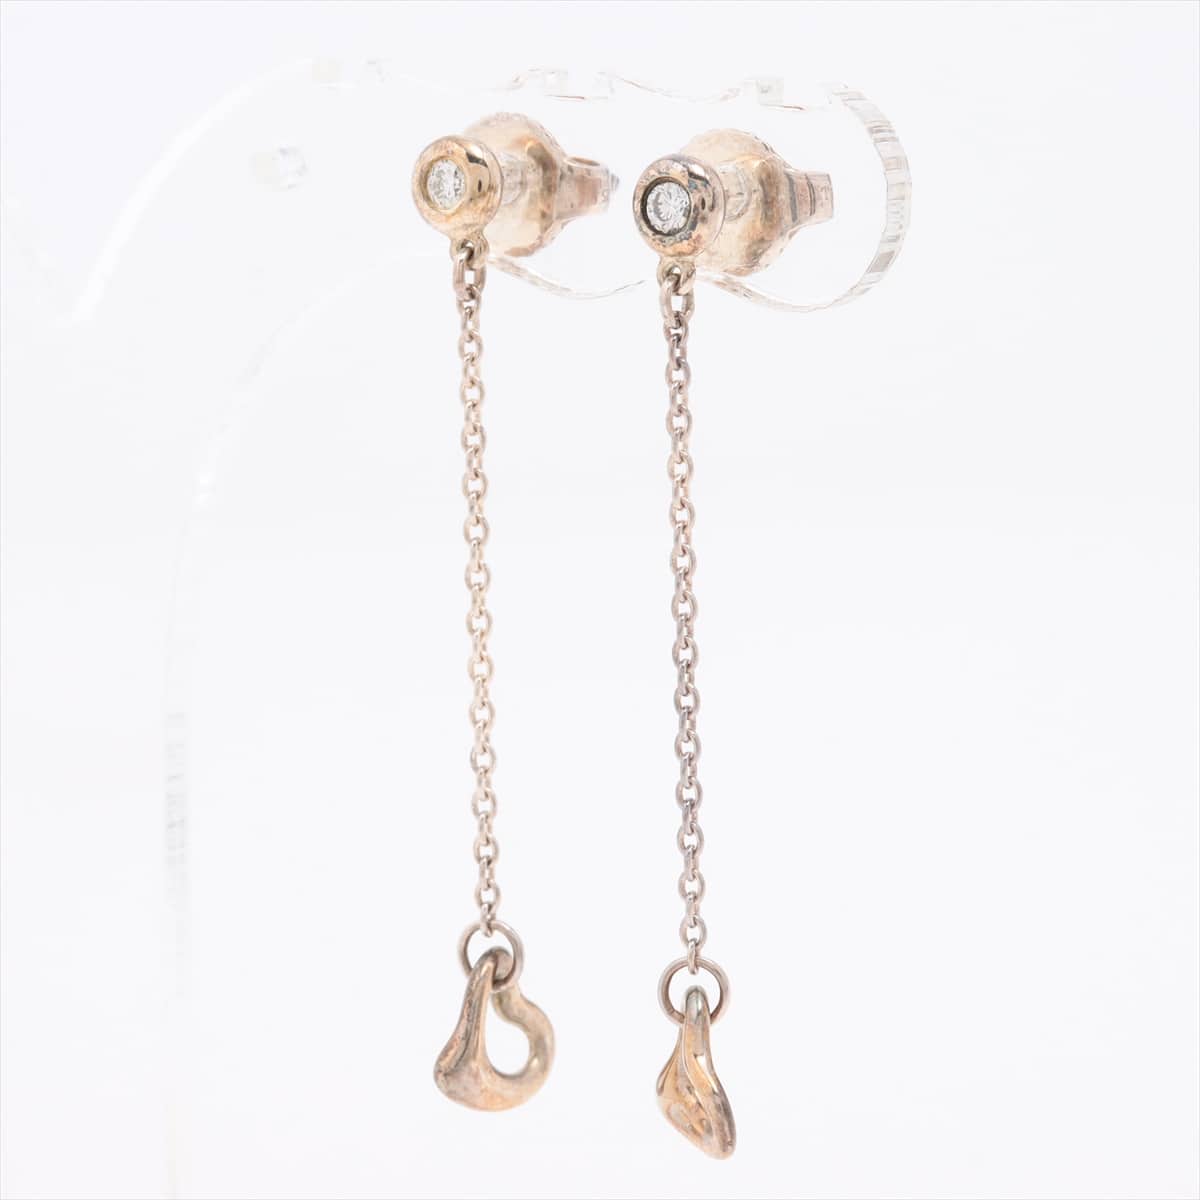 Tiffany Open Heart Piercing jewelry (for both ears) 925 1.6g Silver